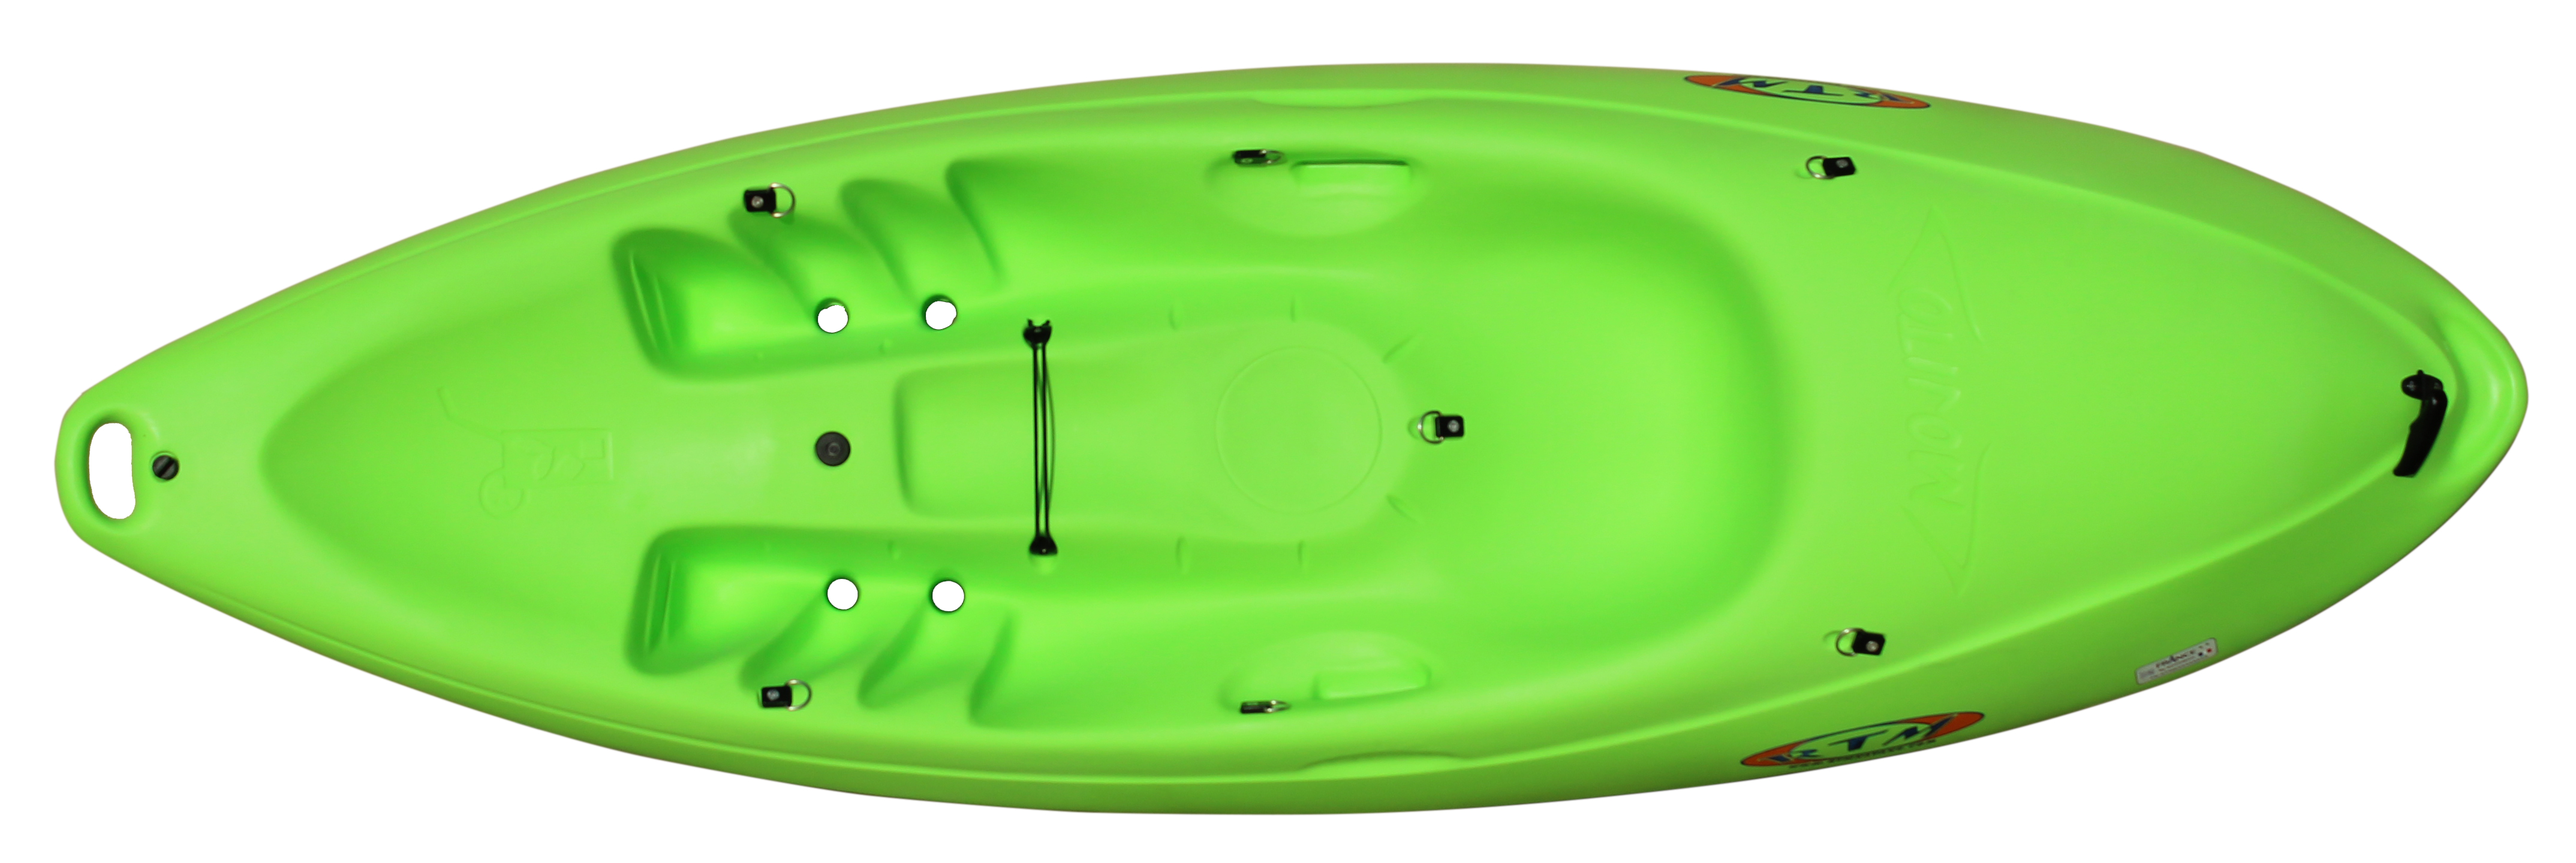 Kayak Mojito vert